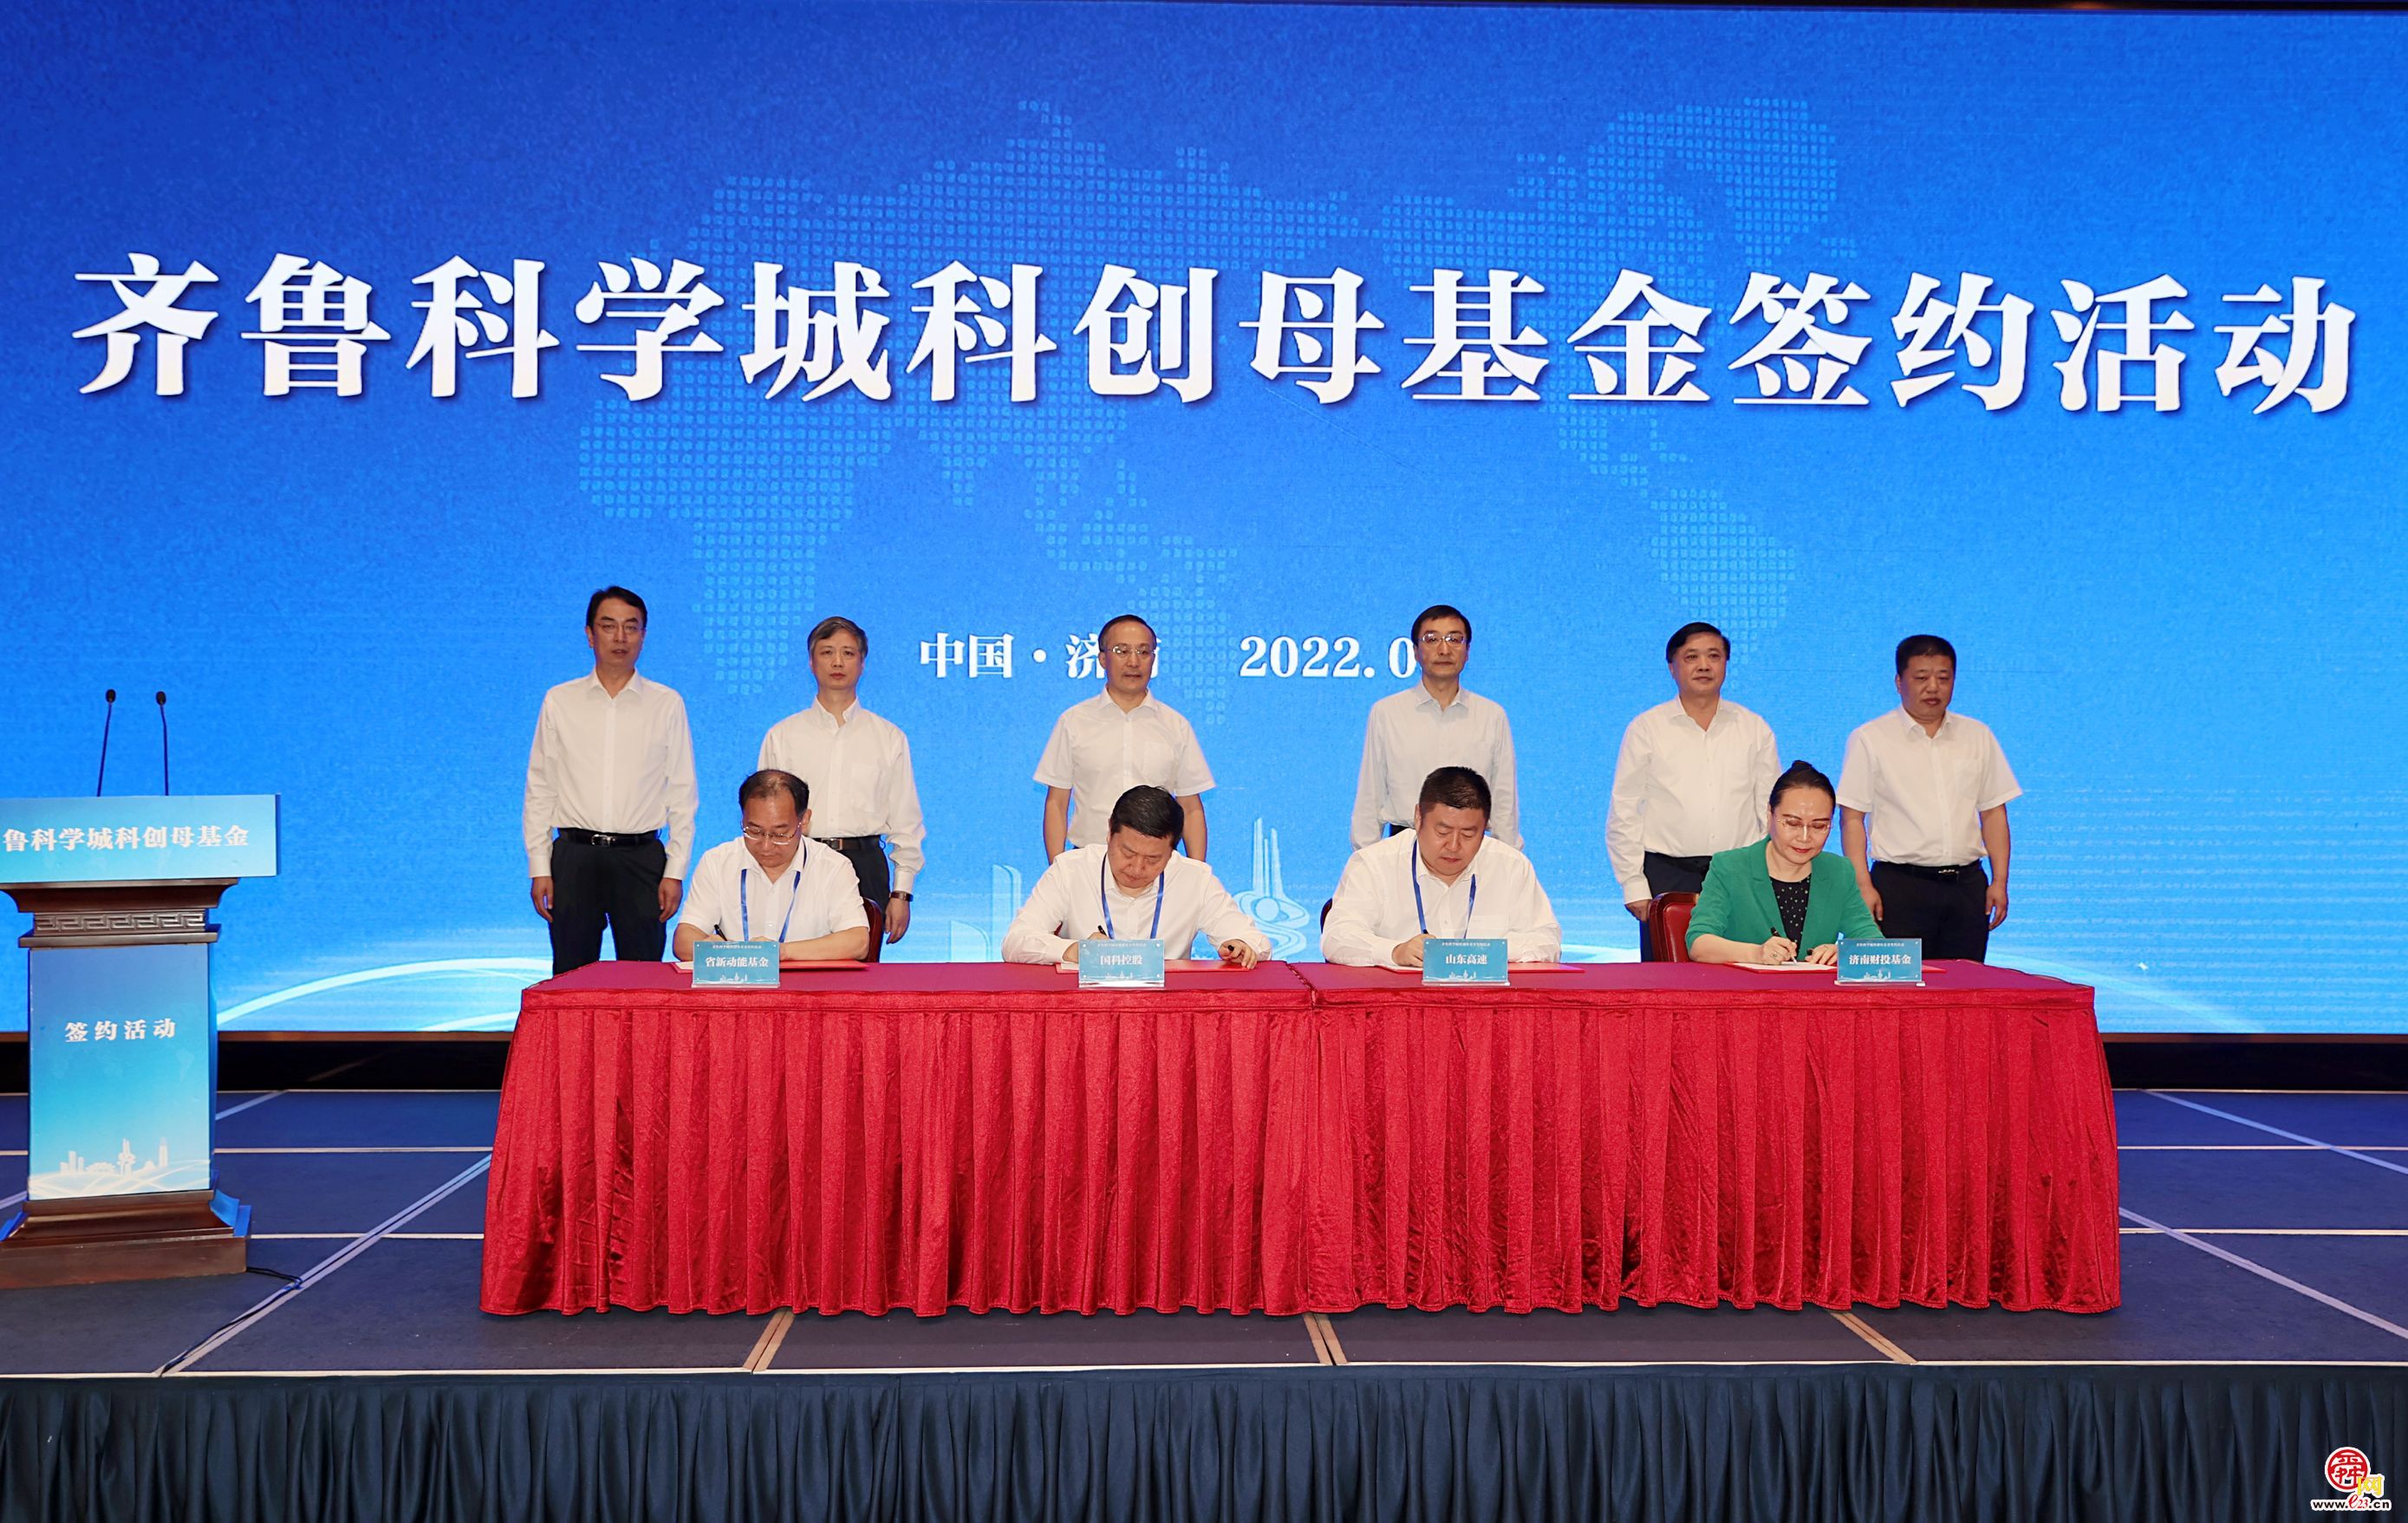 齐鲁科学城科创母基金签约仪式举行 张涛刘强出席并见证签约